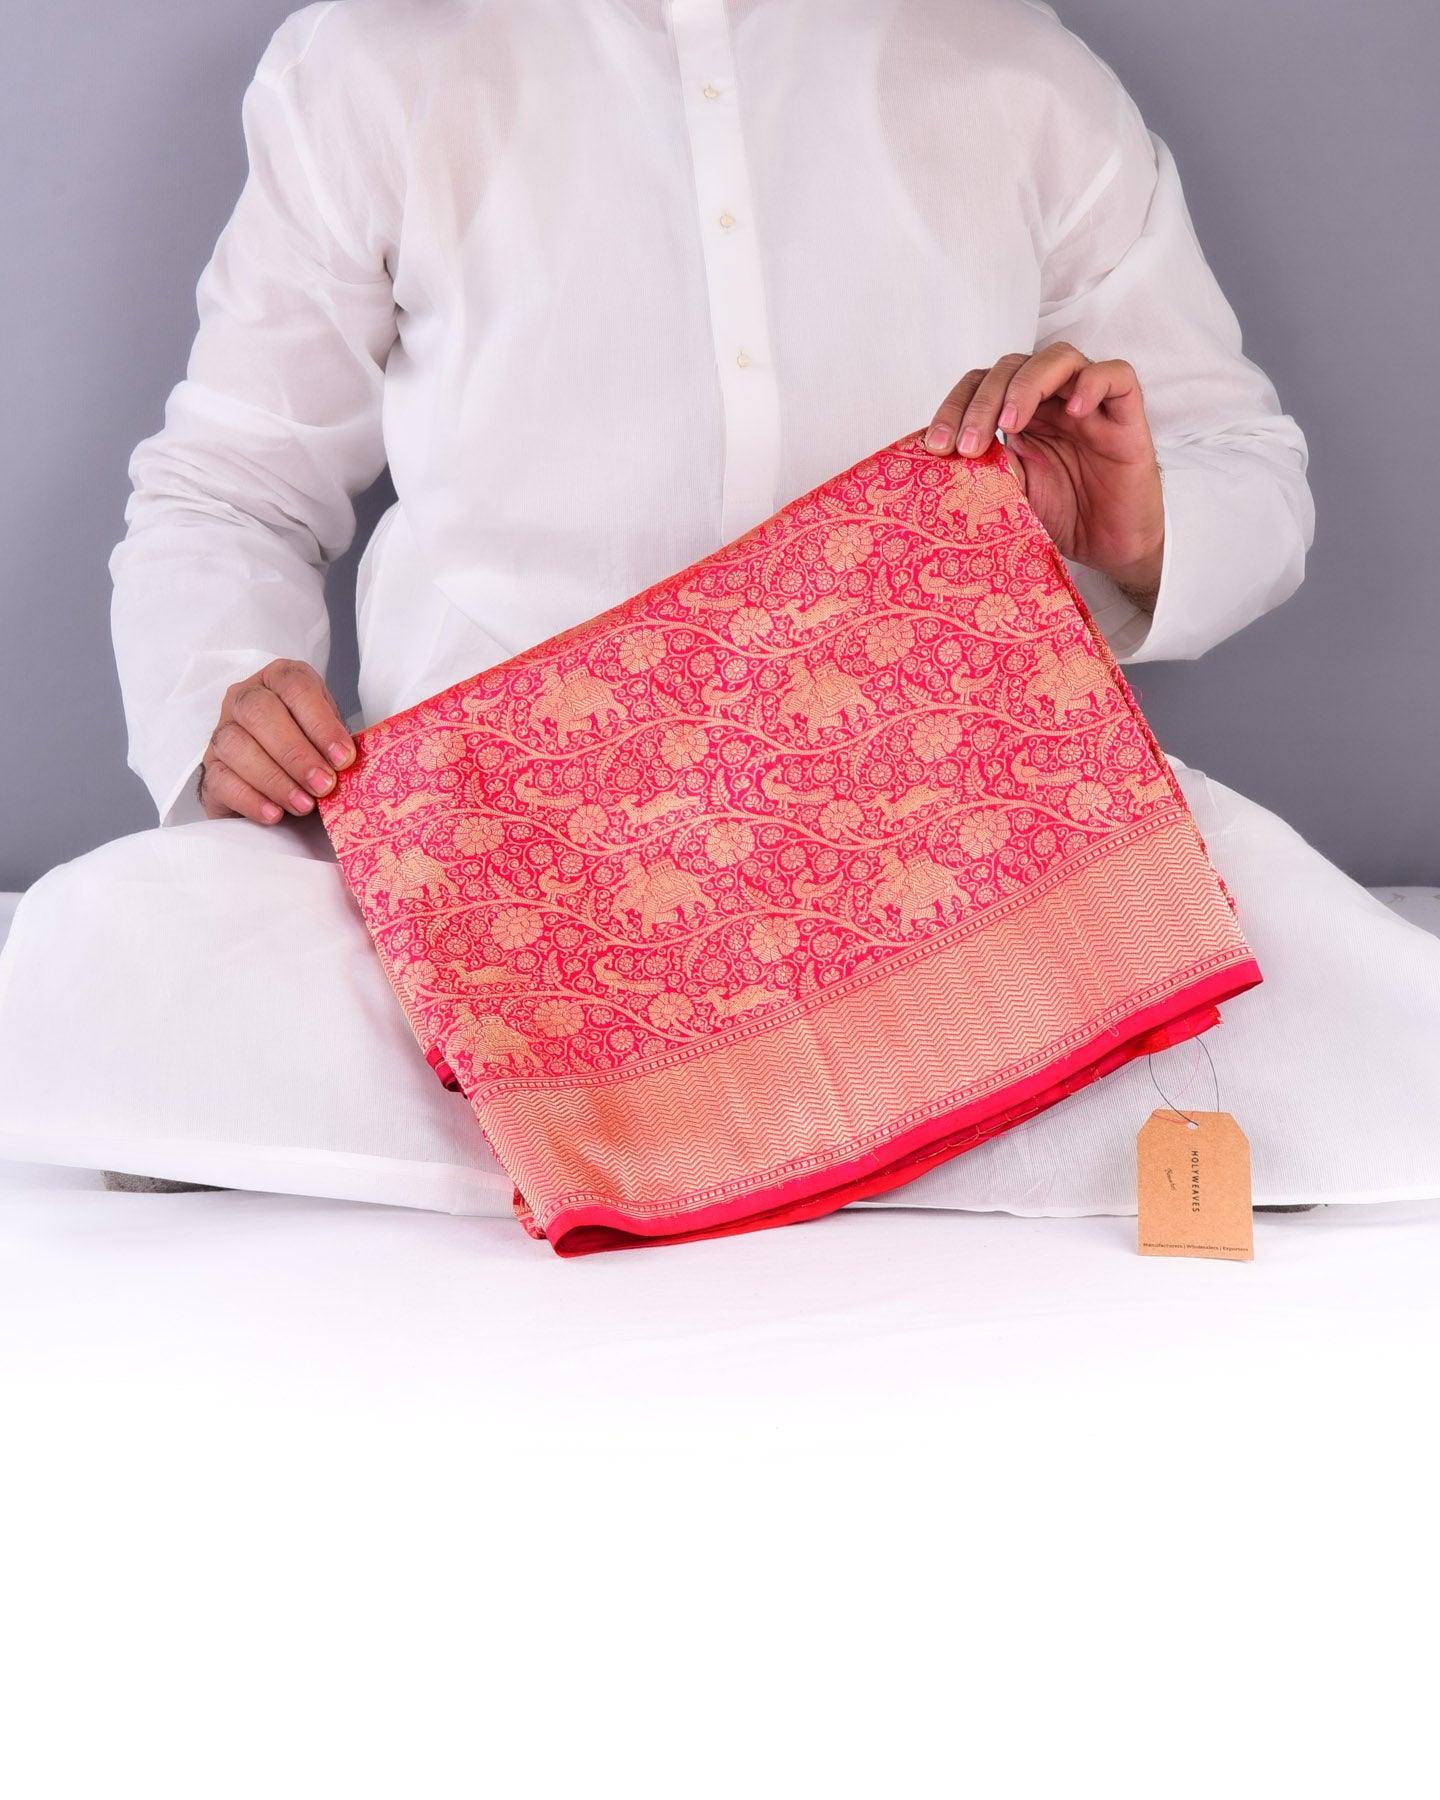 Shot Ruby Pink Banarasi Shikargah Brocade Handwoven Katan Silk Saree - By HolyWeaves, Benares